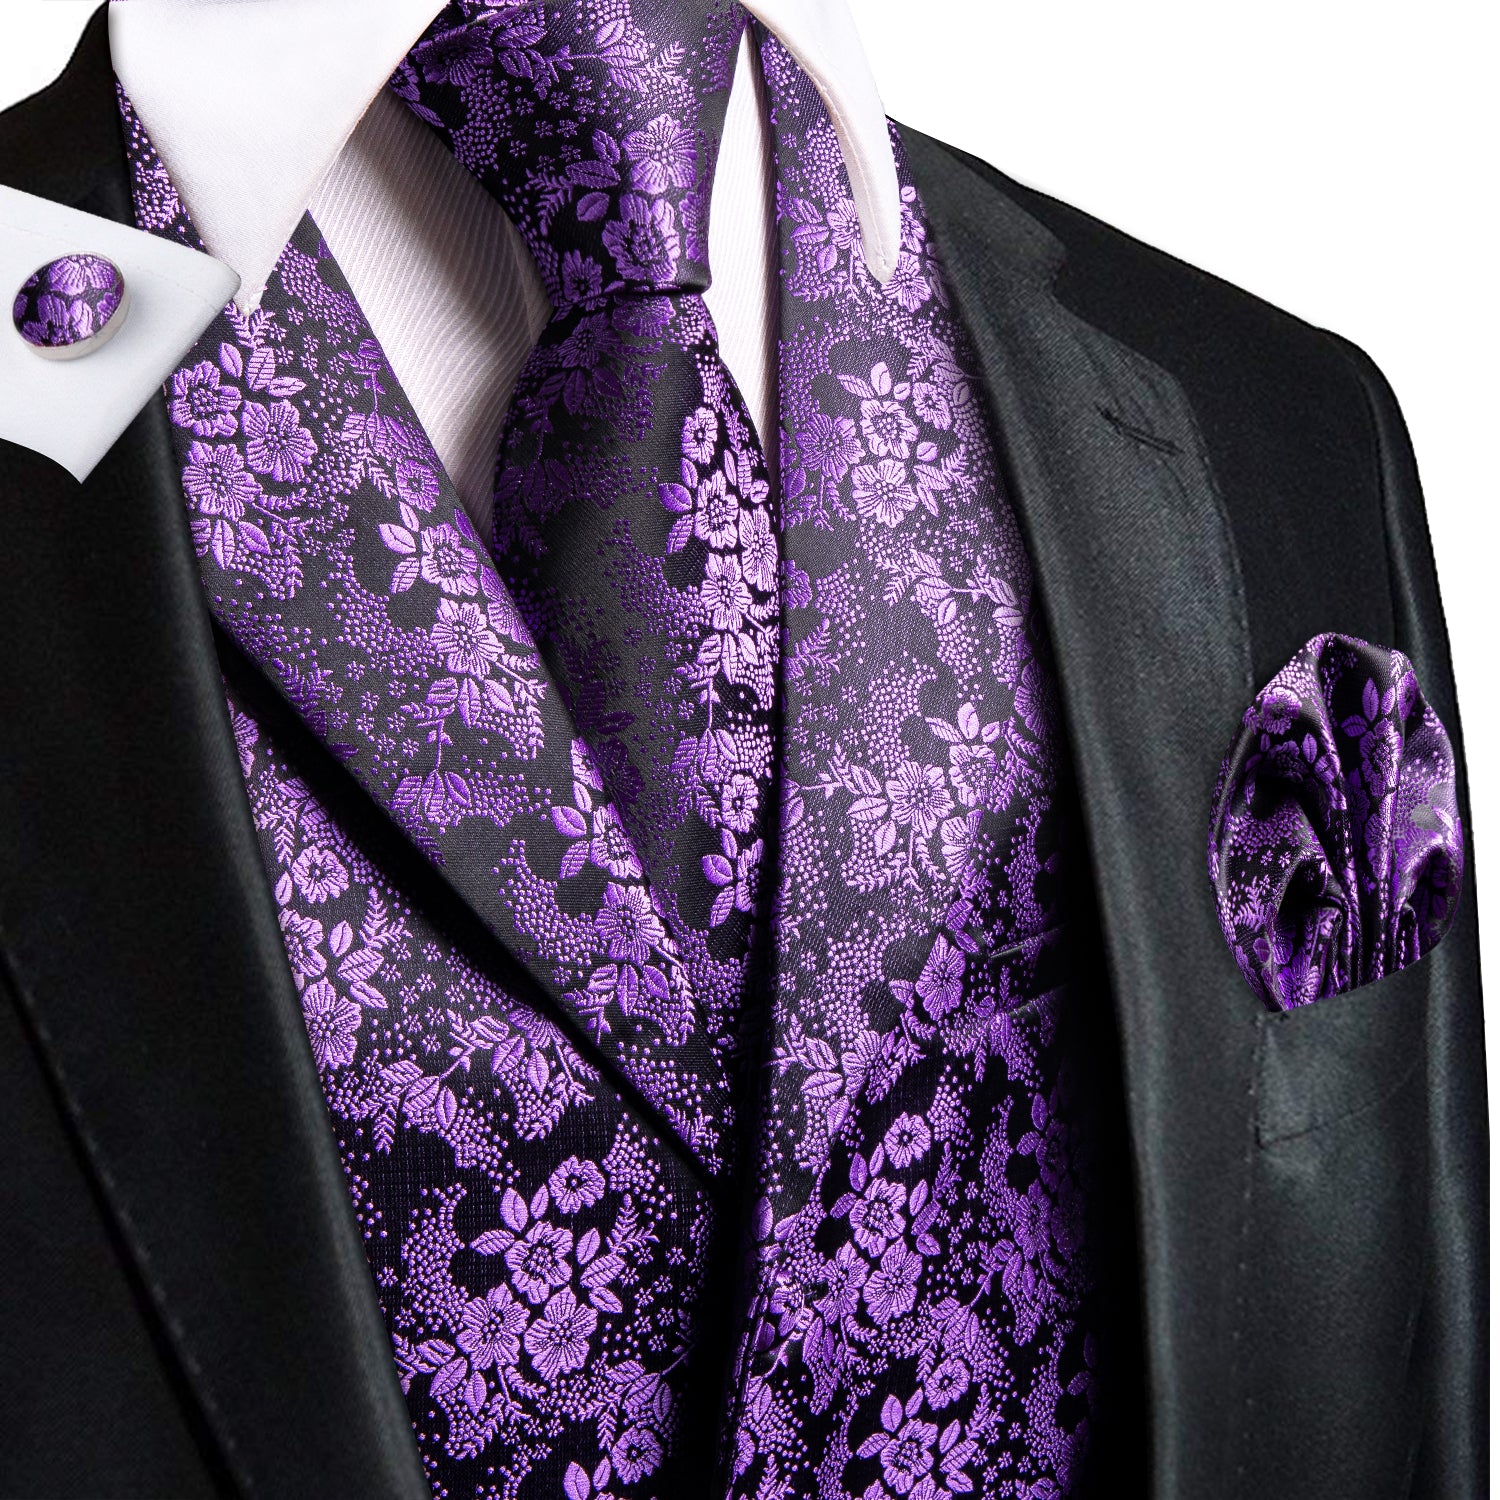 Deep Purple Floral Silk Men's Collar Vest Hanky Cufflinks Tie Set Waistcoat Suit Set